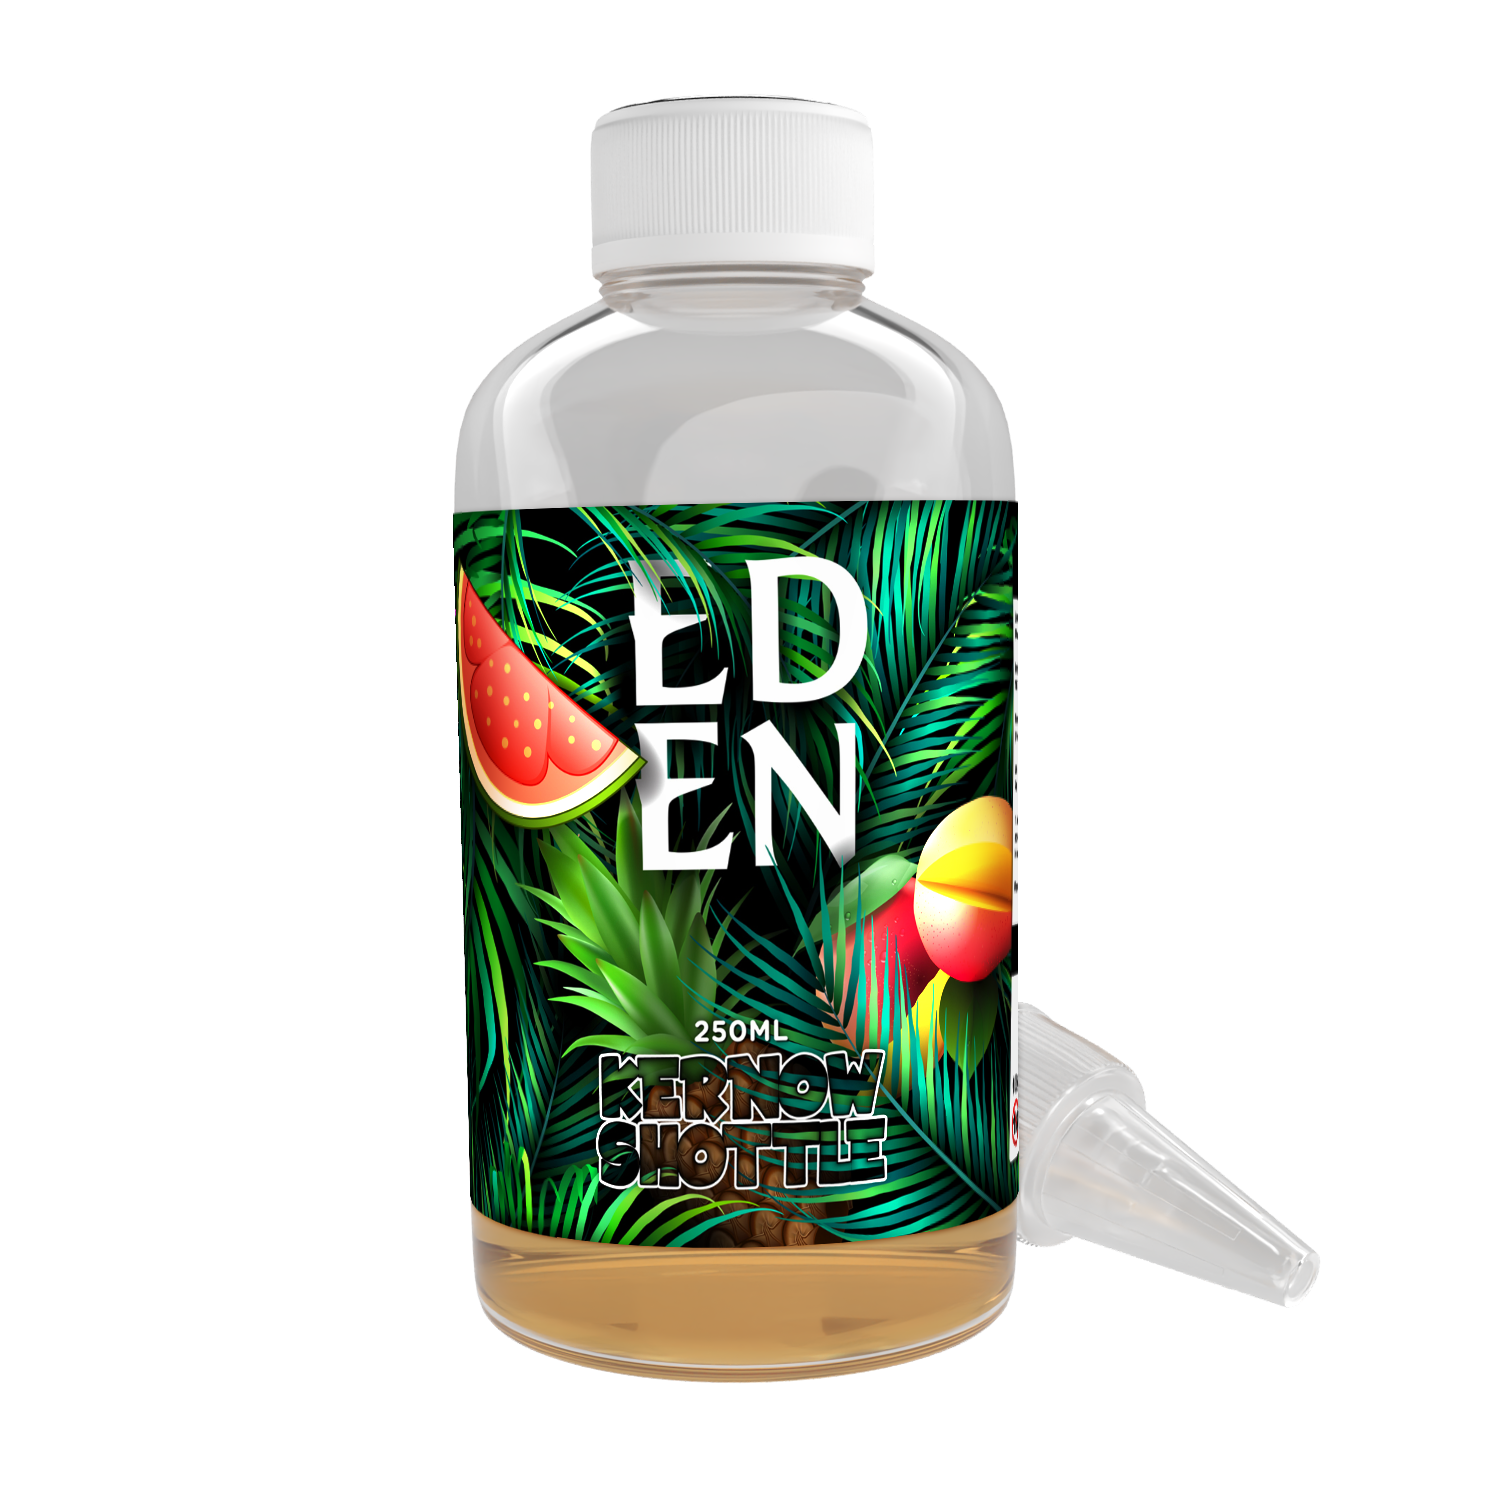 Eden Shottle Flavour Shot by Kernow - 250ml